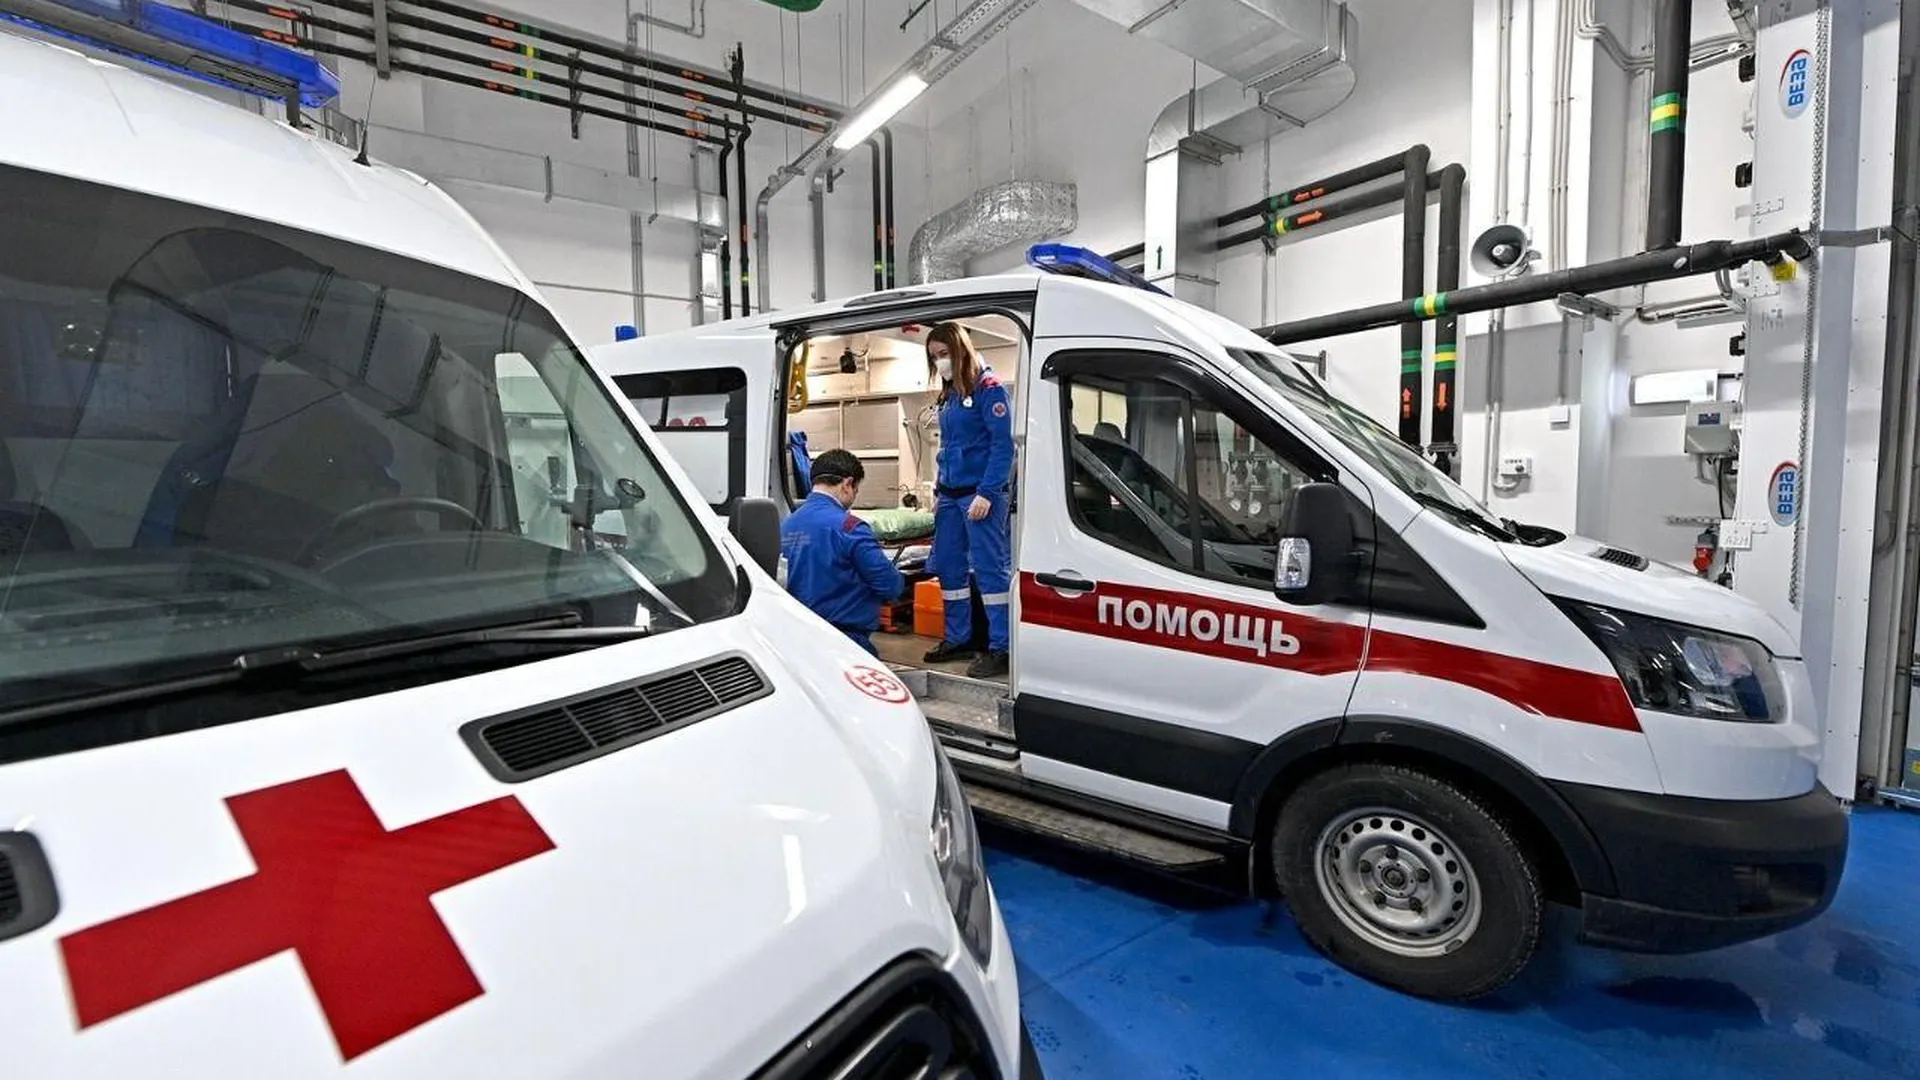 Подстанция скорой помощи появится по реновации в Царицыне – Загрутдинов